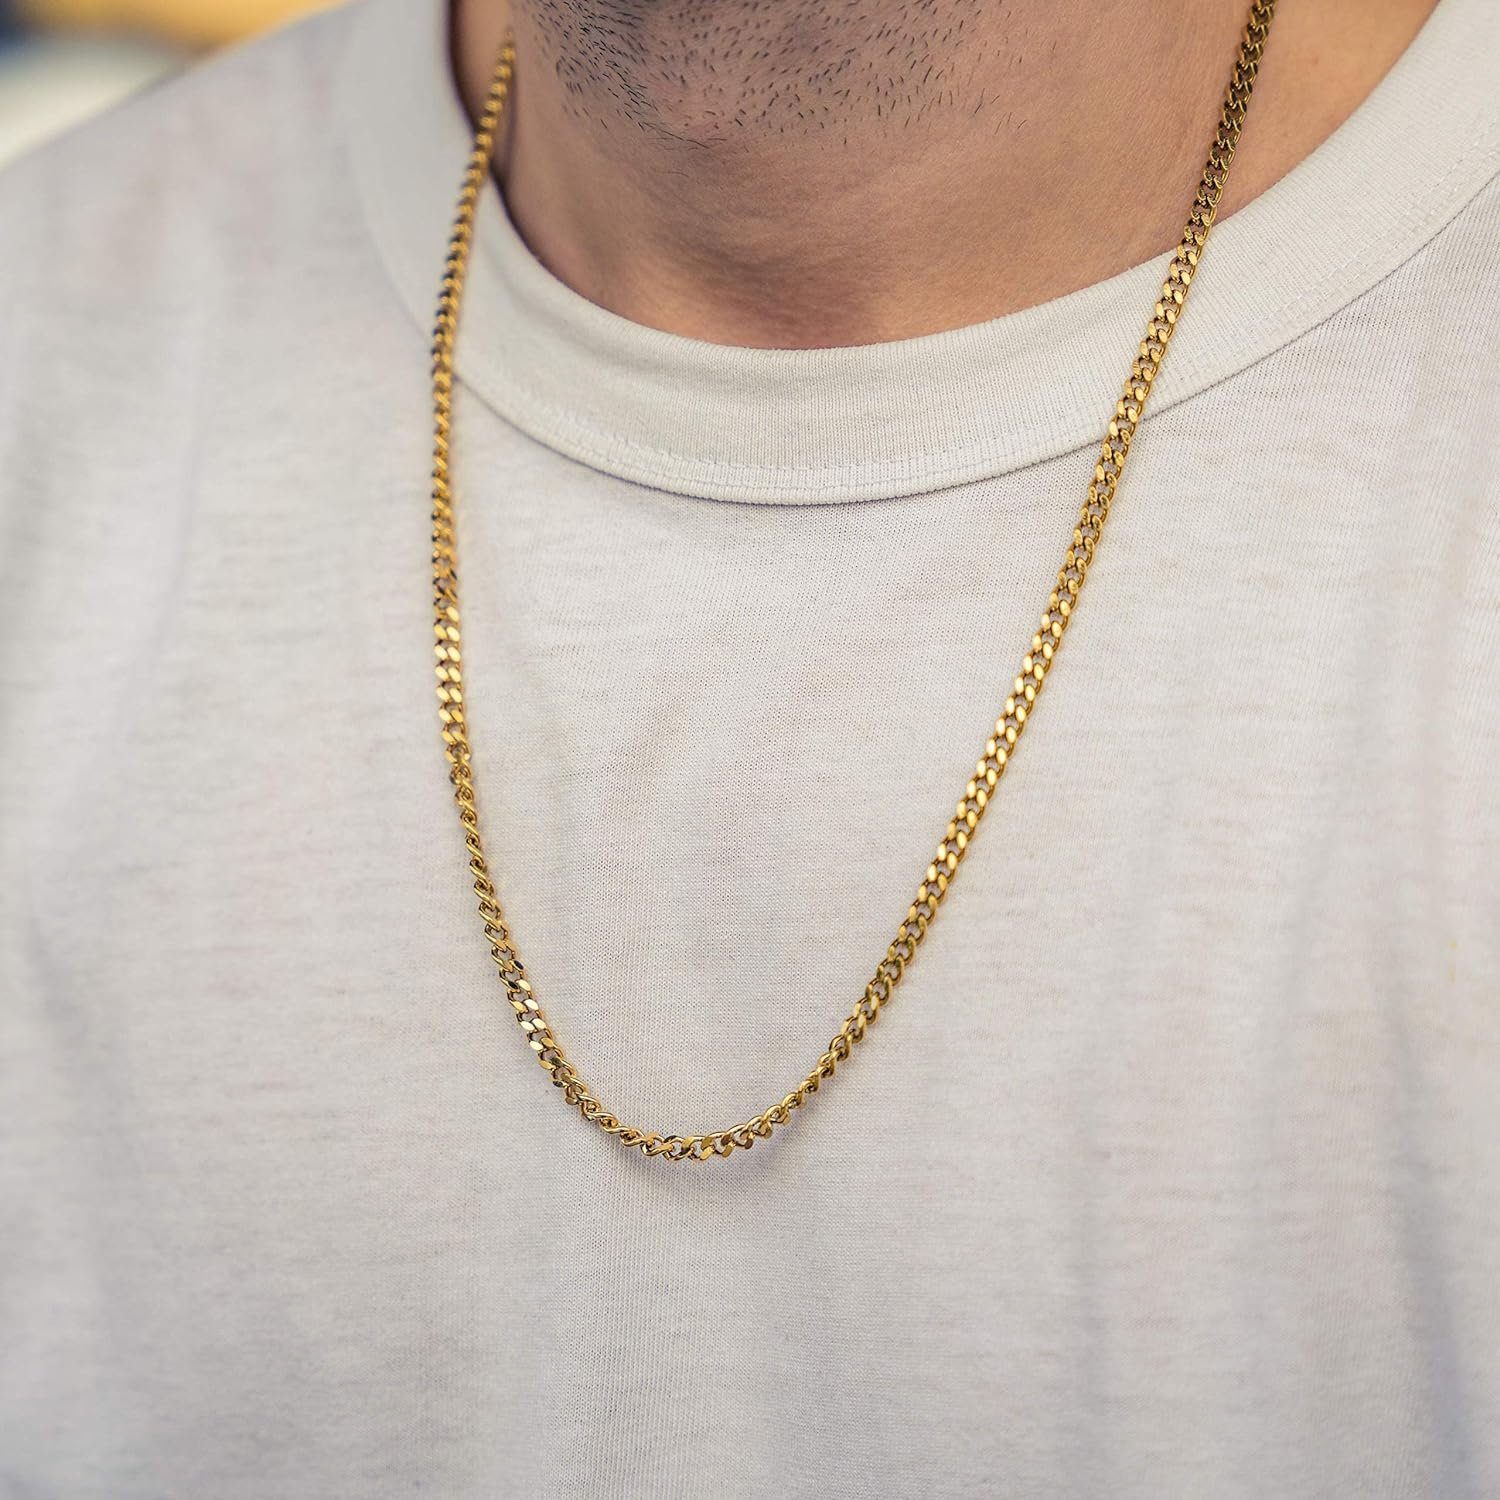 Königskette, Link Herren Damen & Robuste Hochwertige Nami Halskette aus Chain Gliederkette Made Cuban Gold Panzerkette Halskette Edelstahl by